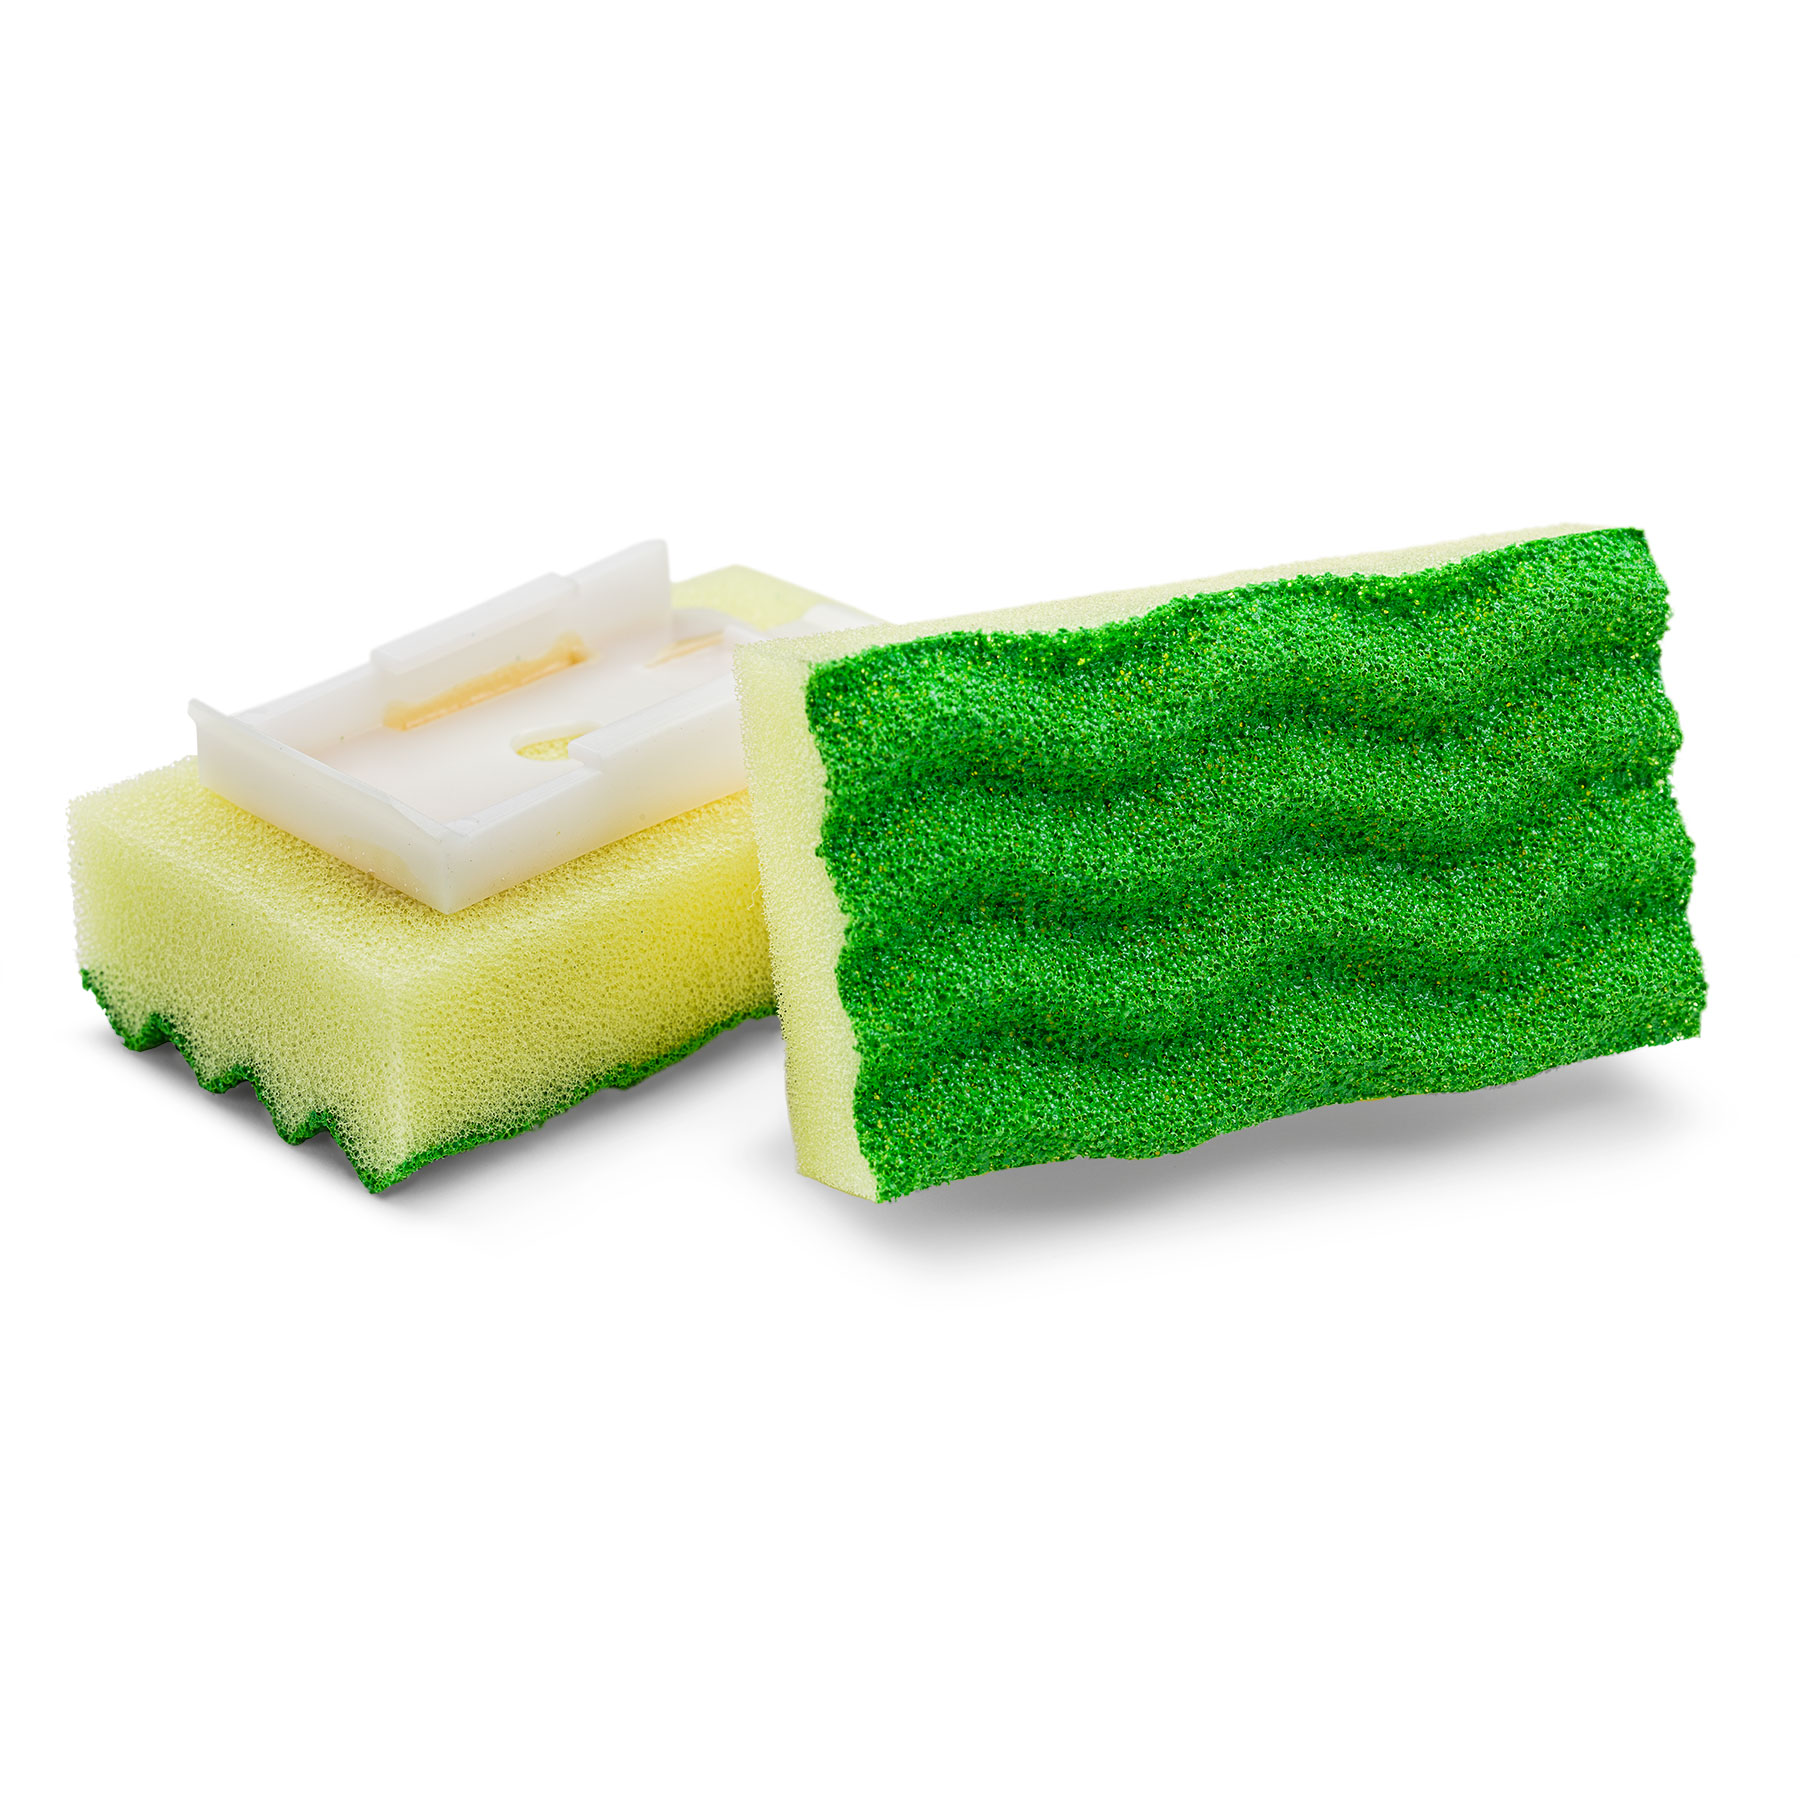 Libman Dish Sponge Refills, 2-Packs (4-sponge refills)